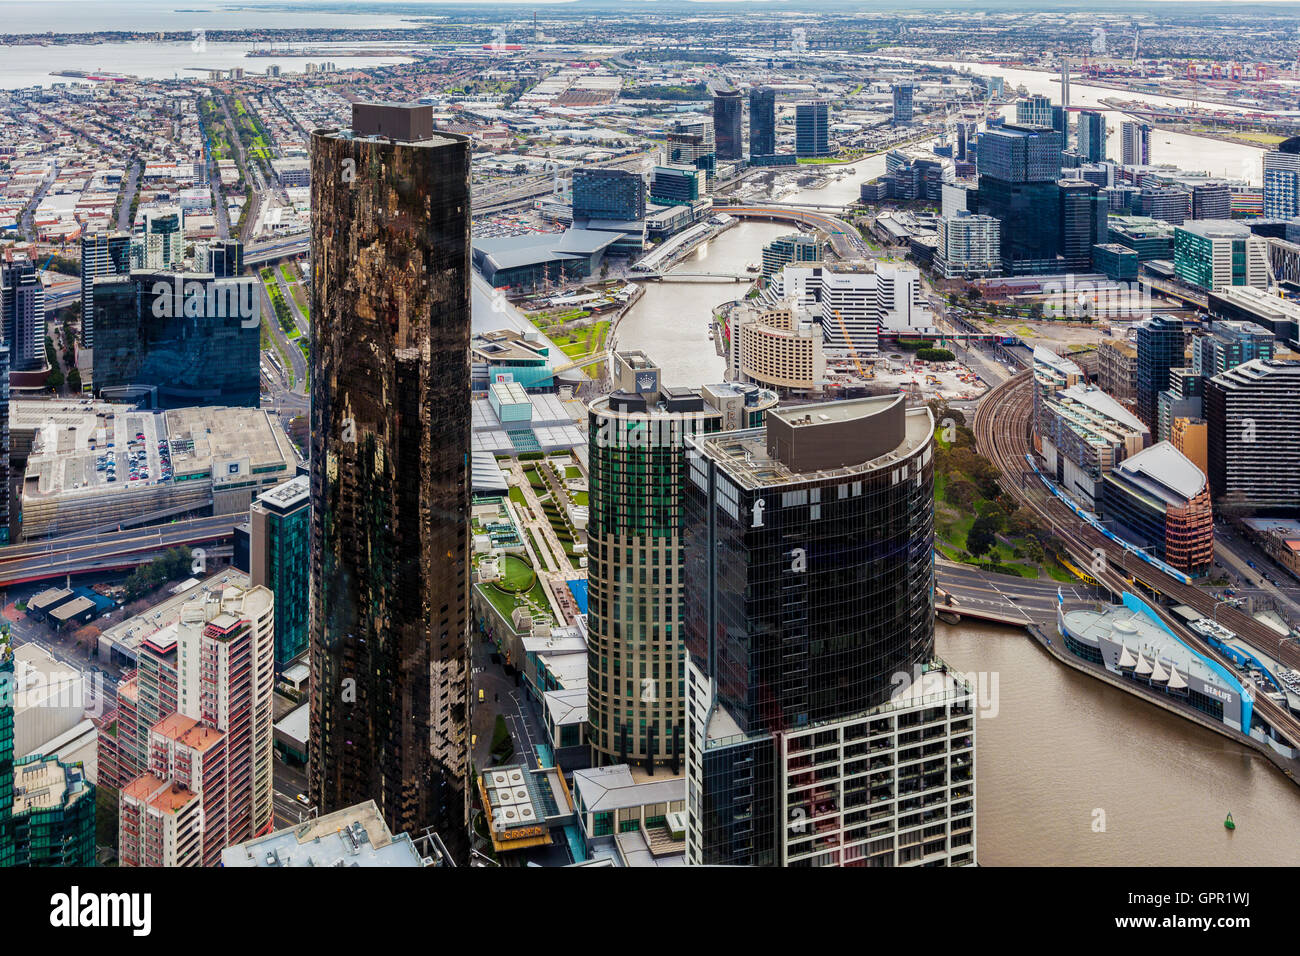 Melbourne, Australia - 27 agosto 2016: vista aerea del CBD di Melbourne con grattacieli e il fiume Yarra avvolgimento attraverso. Foto Stock